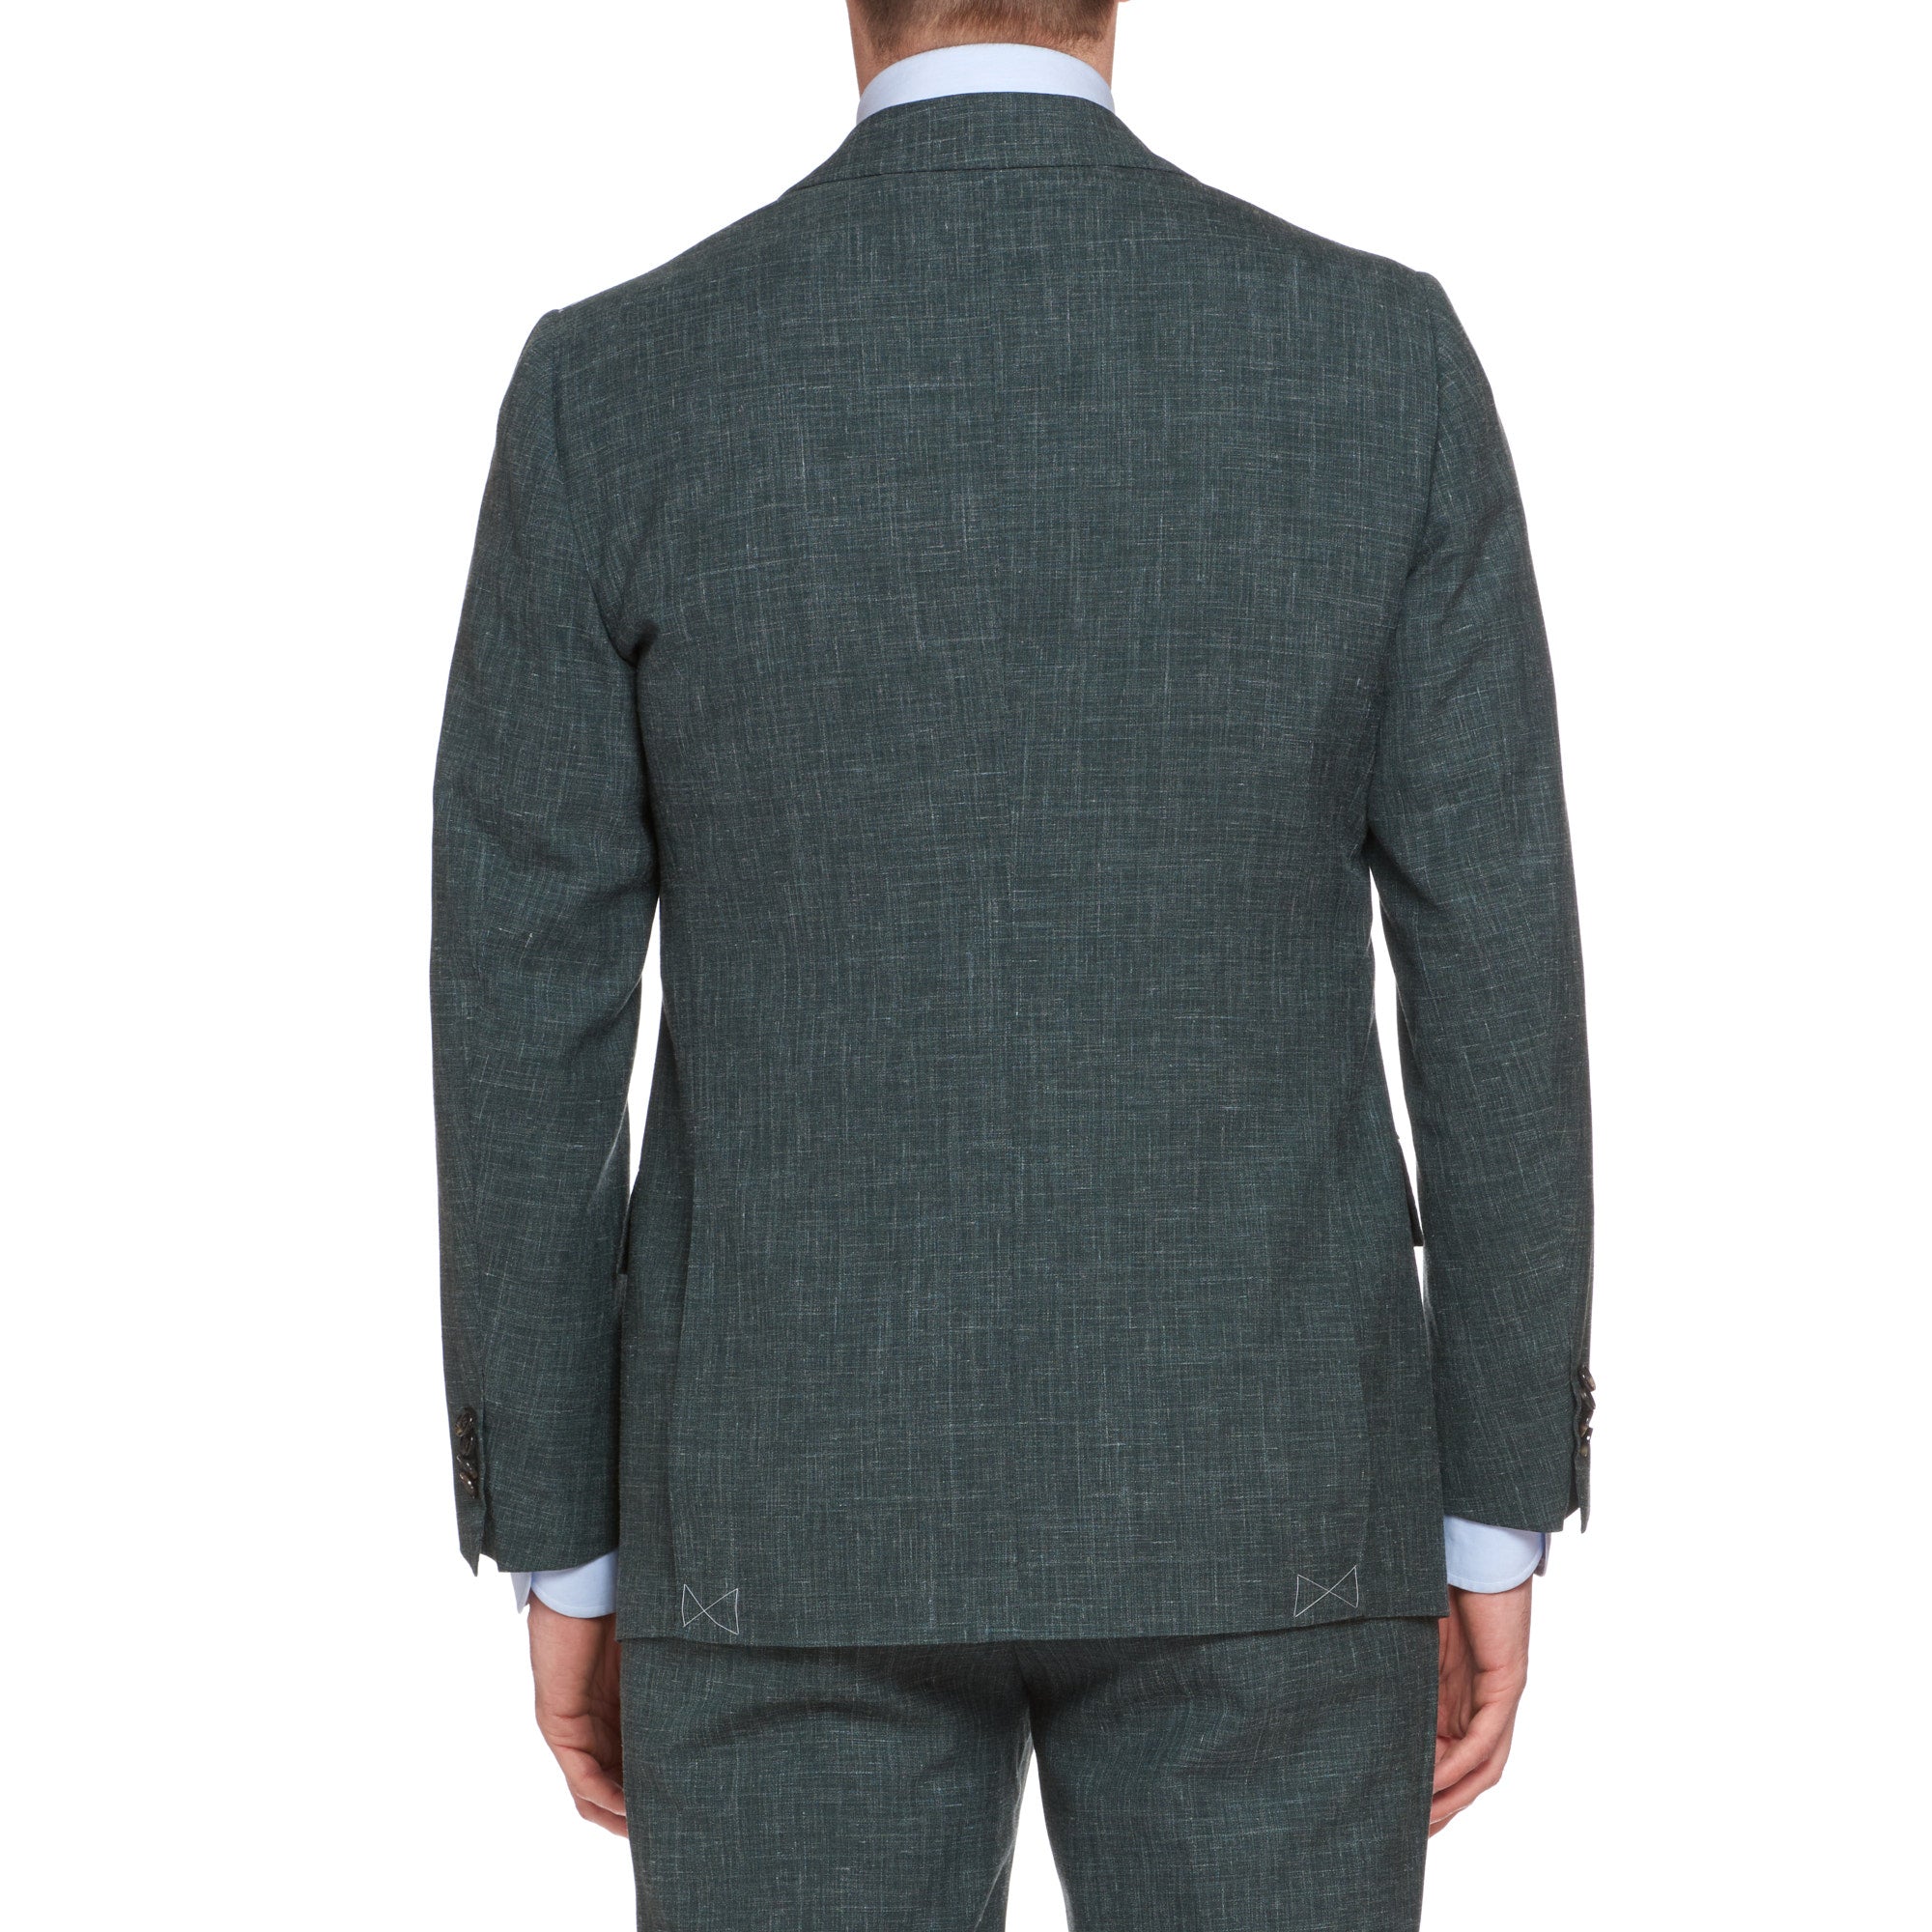 CESARE ATTOLINI Napoli Handmade Chambray Green Wool-Silk Suit NEW CESARE ATTOLINI